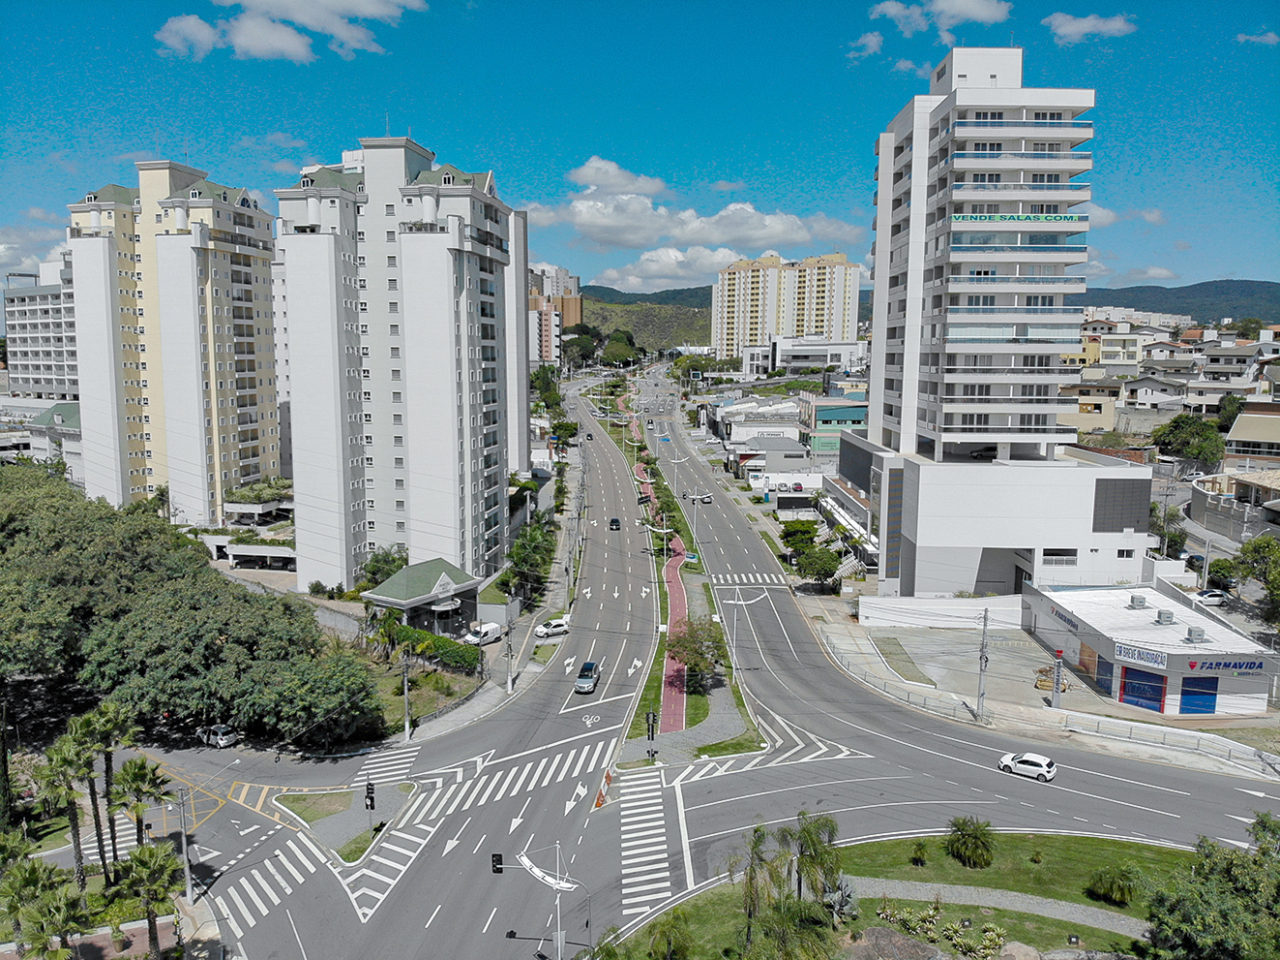 Foto aérea de avenida com pistas largas, prédios ao redor e uma praça central